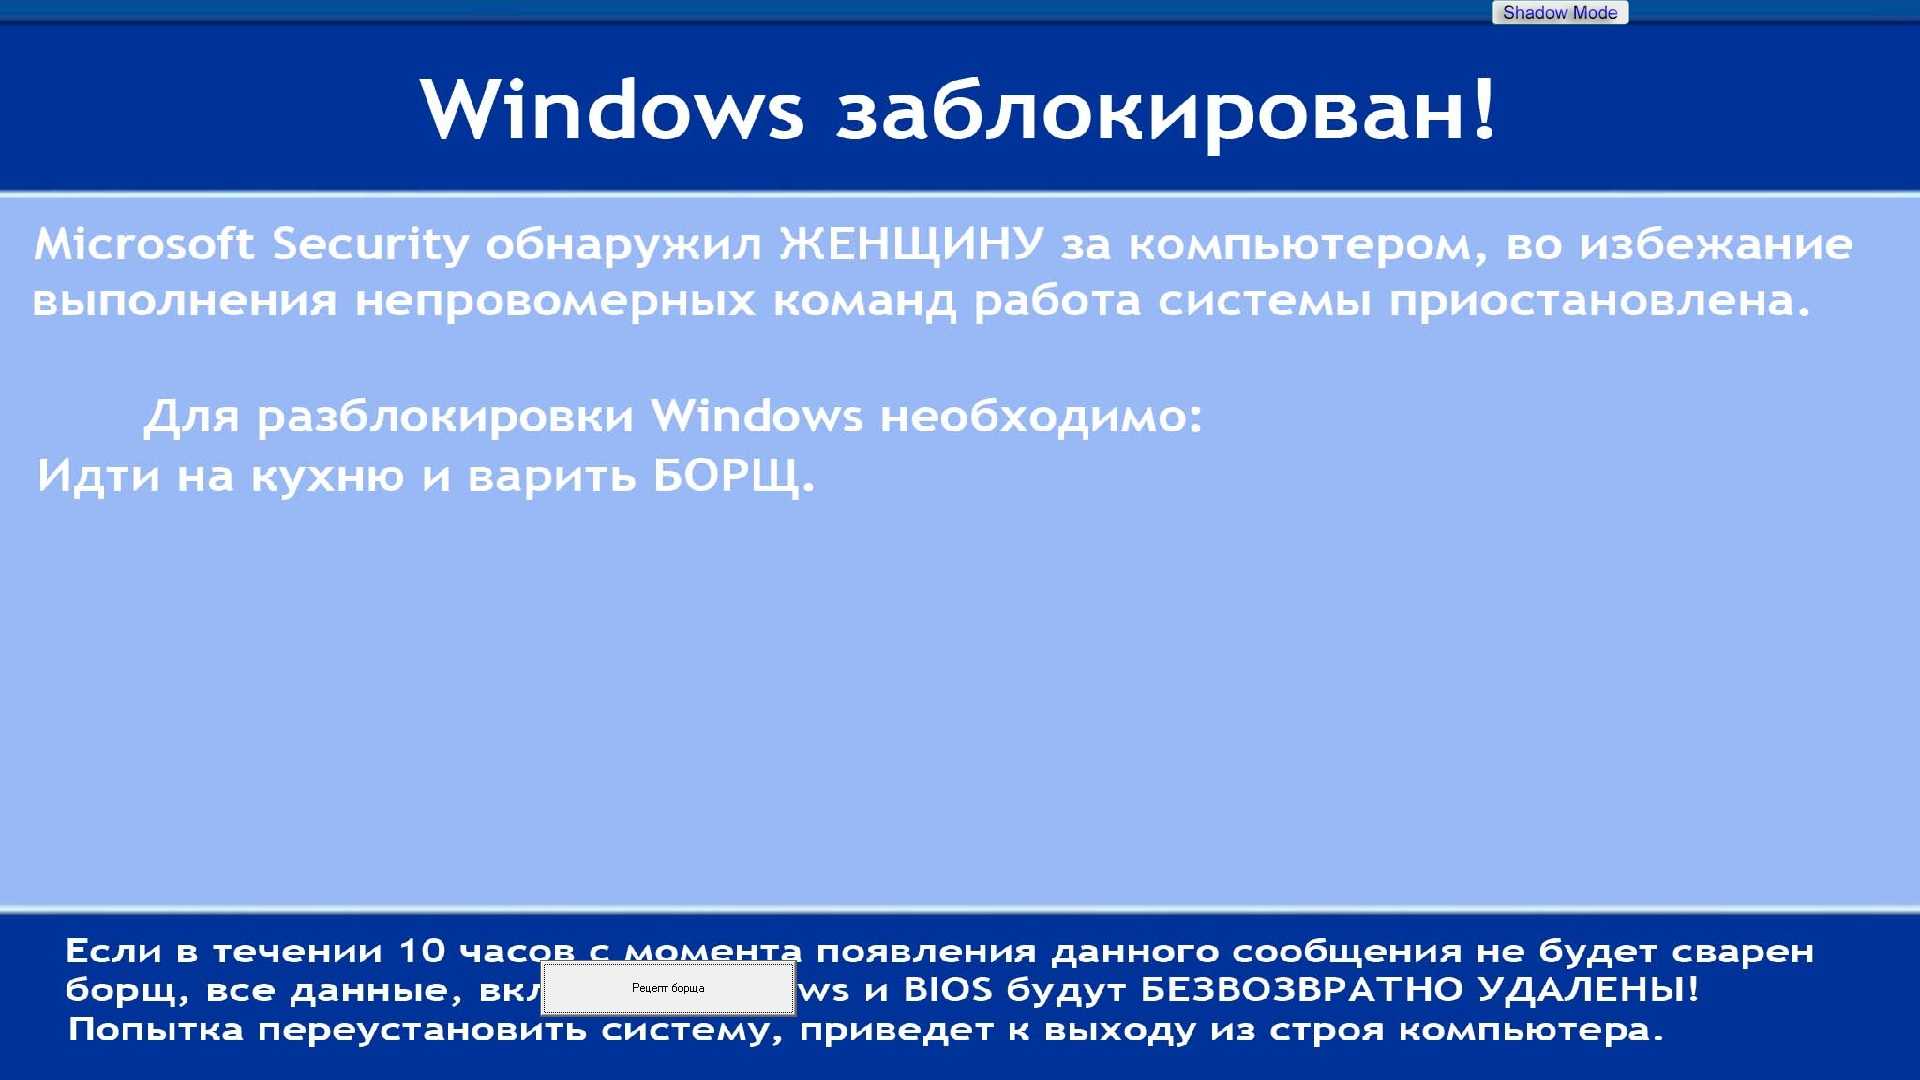 Windows не удалось автоматически обнаружить параметры прокси этой сети